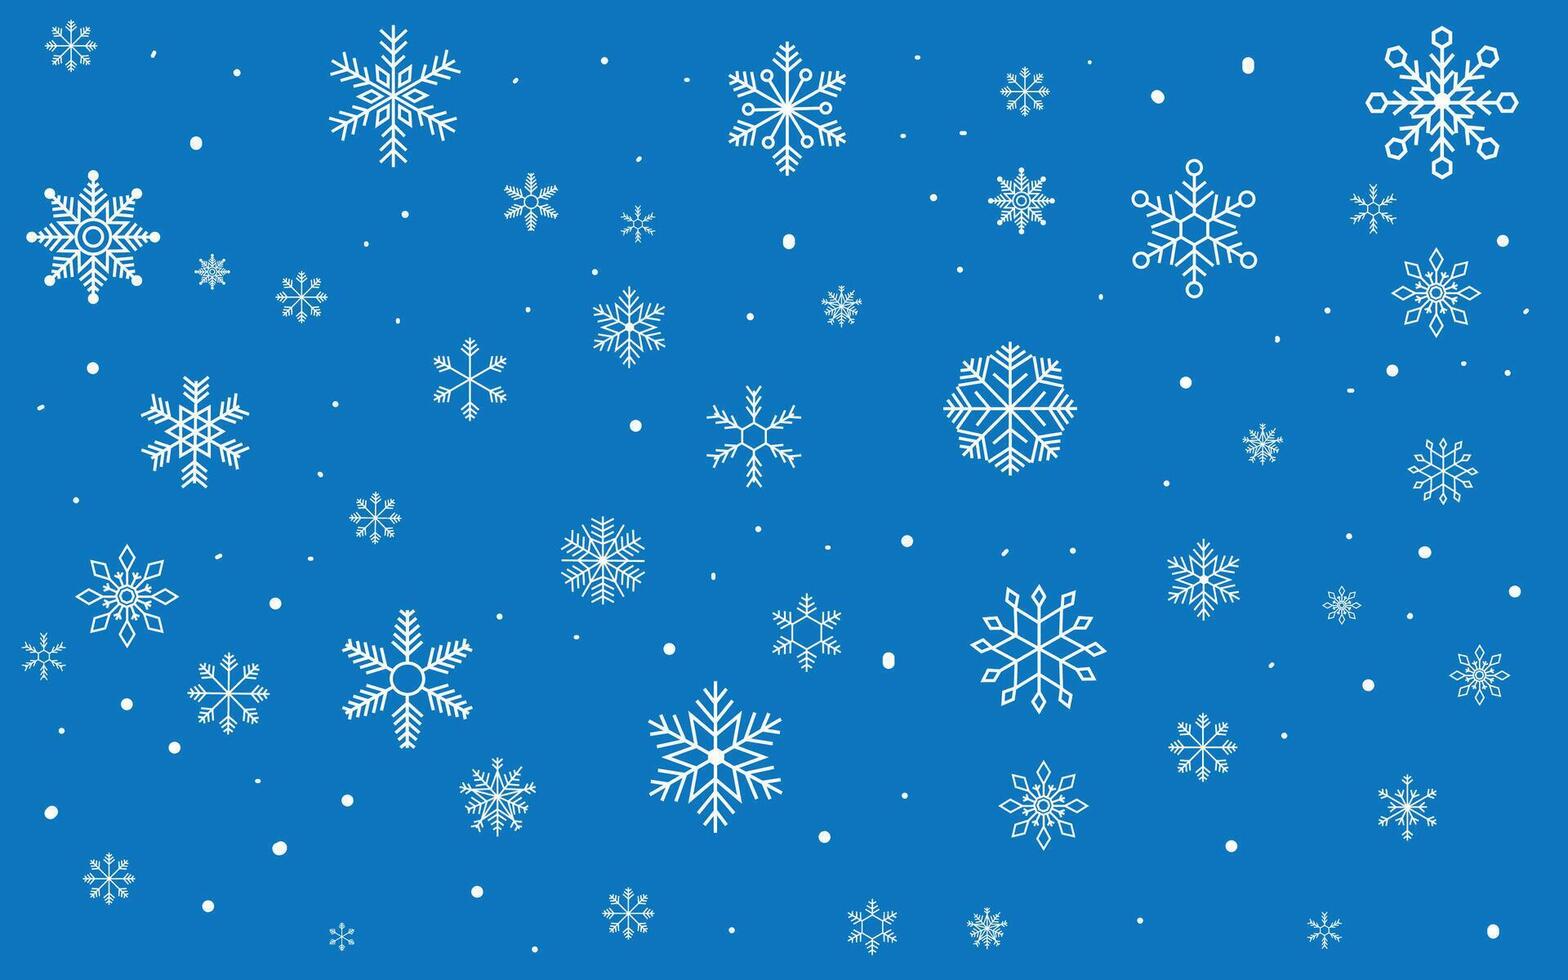 faller snöflingor. vinter- snö damm Semester dekorativ element, säsong- himmel snöfall snöstorm frysta väder symboler. vektor bakgrund